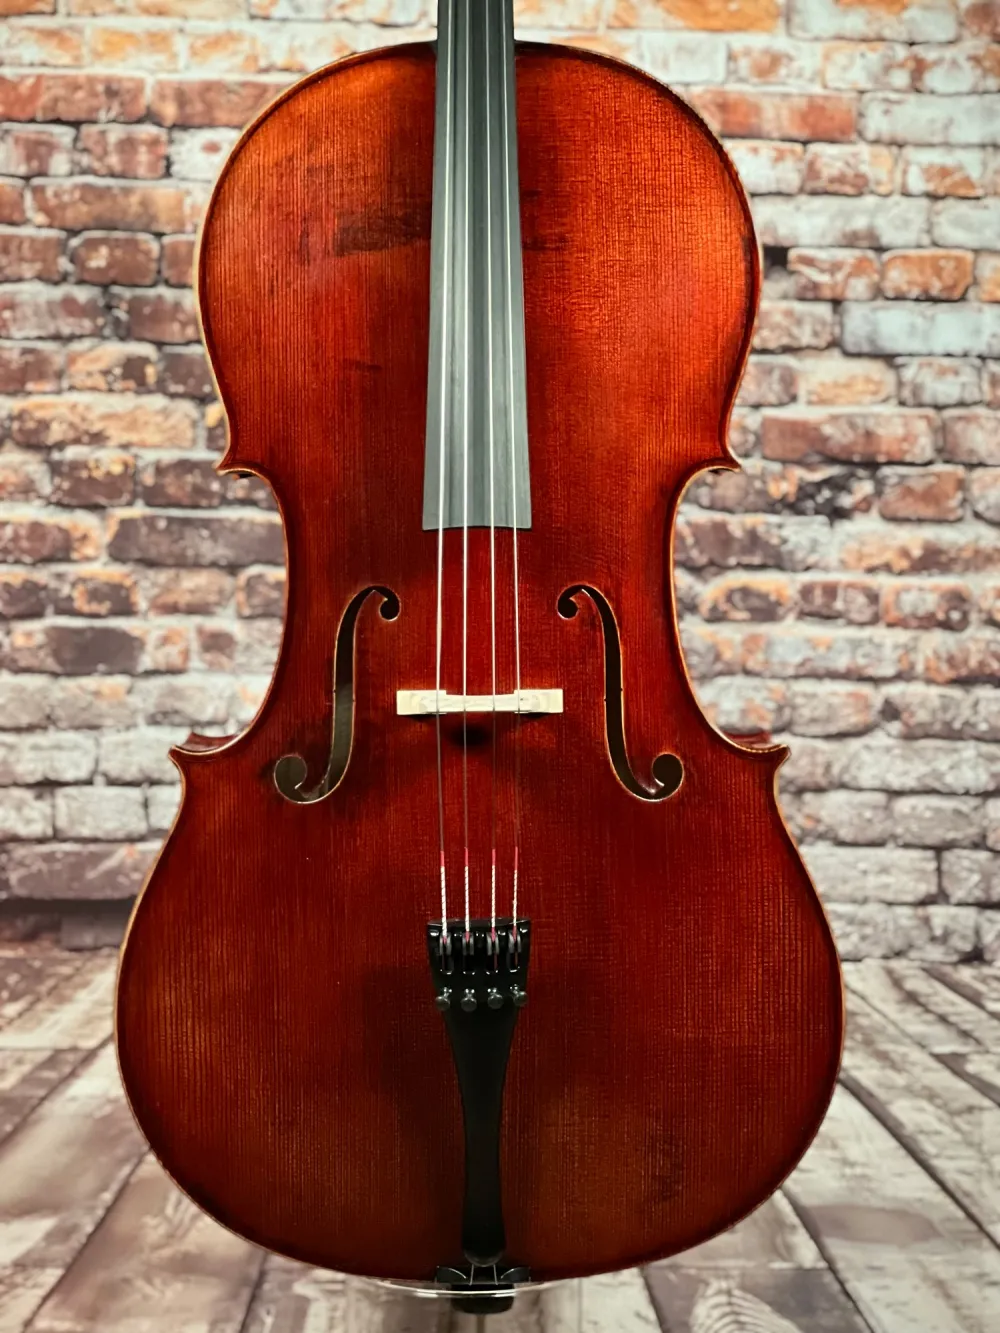 Holger Krupke 4/4 "Meister" Cello, Handmade in Germany